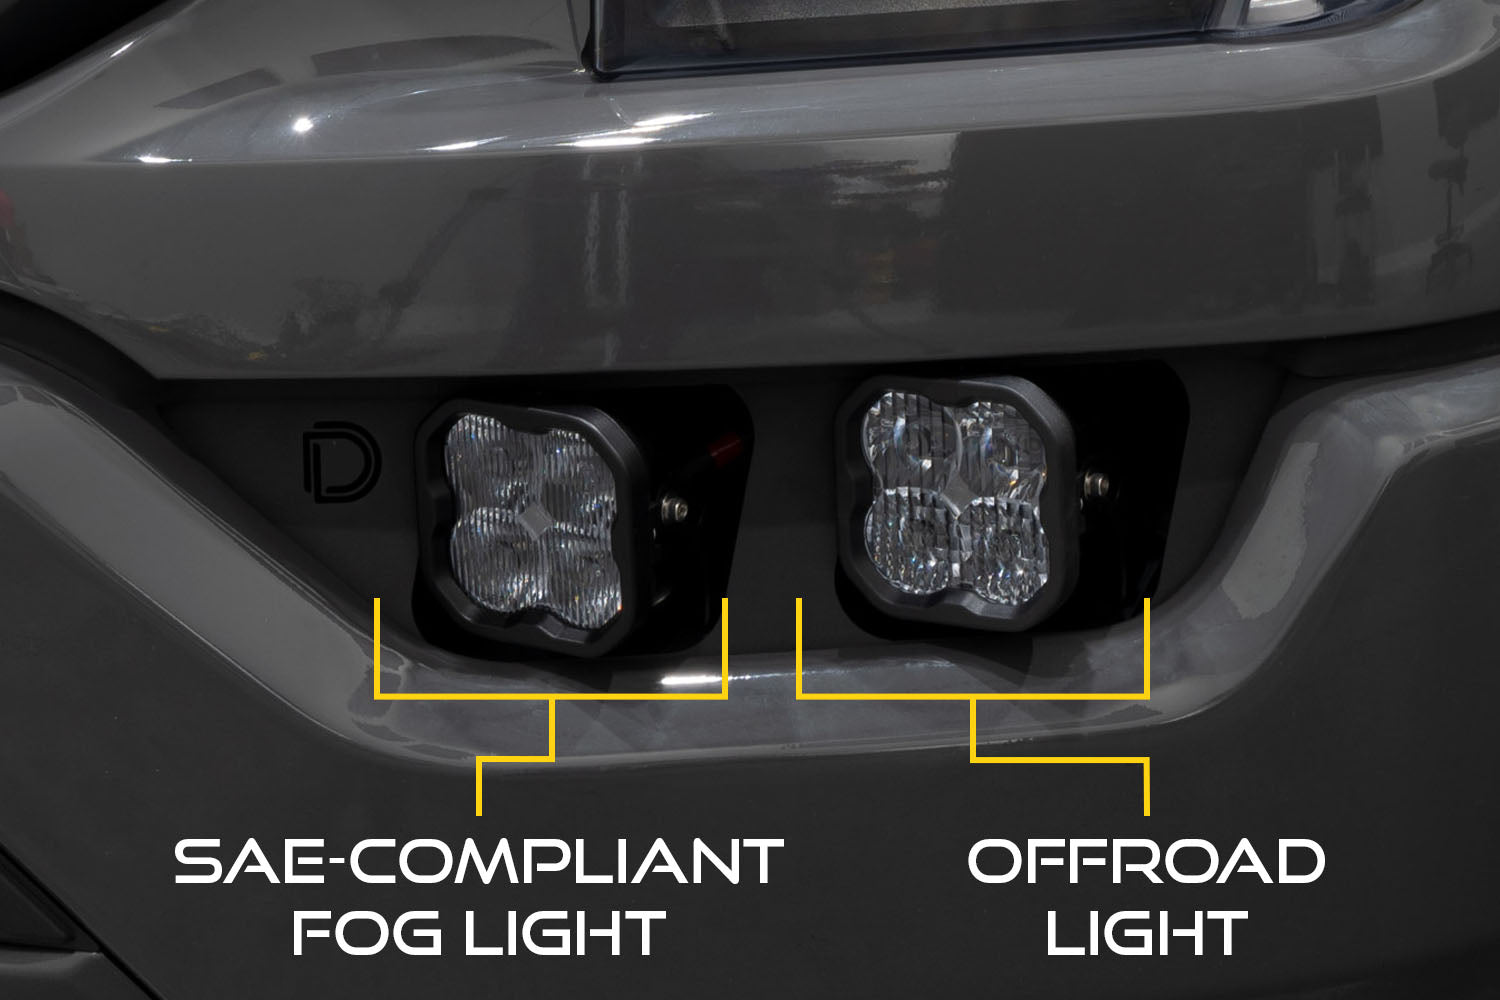 SS3 LED Fog Pocket Kit for 2021-2022 Ford F-150, White Max Diode Dynamics